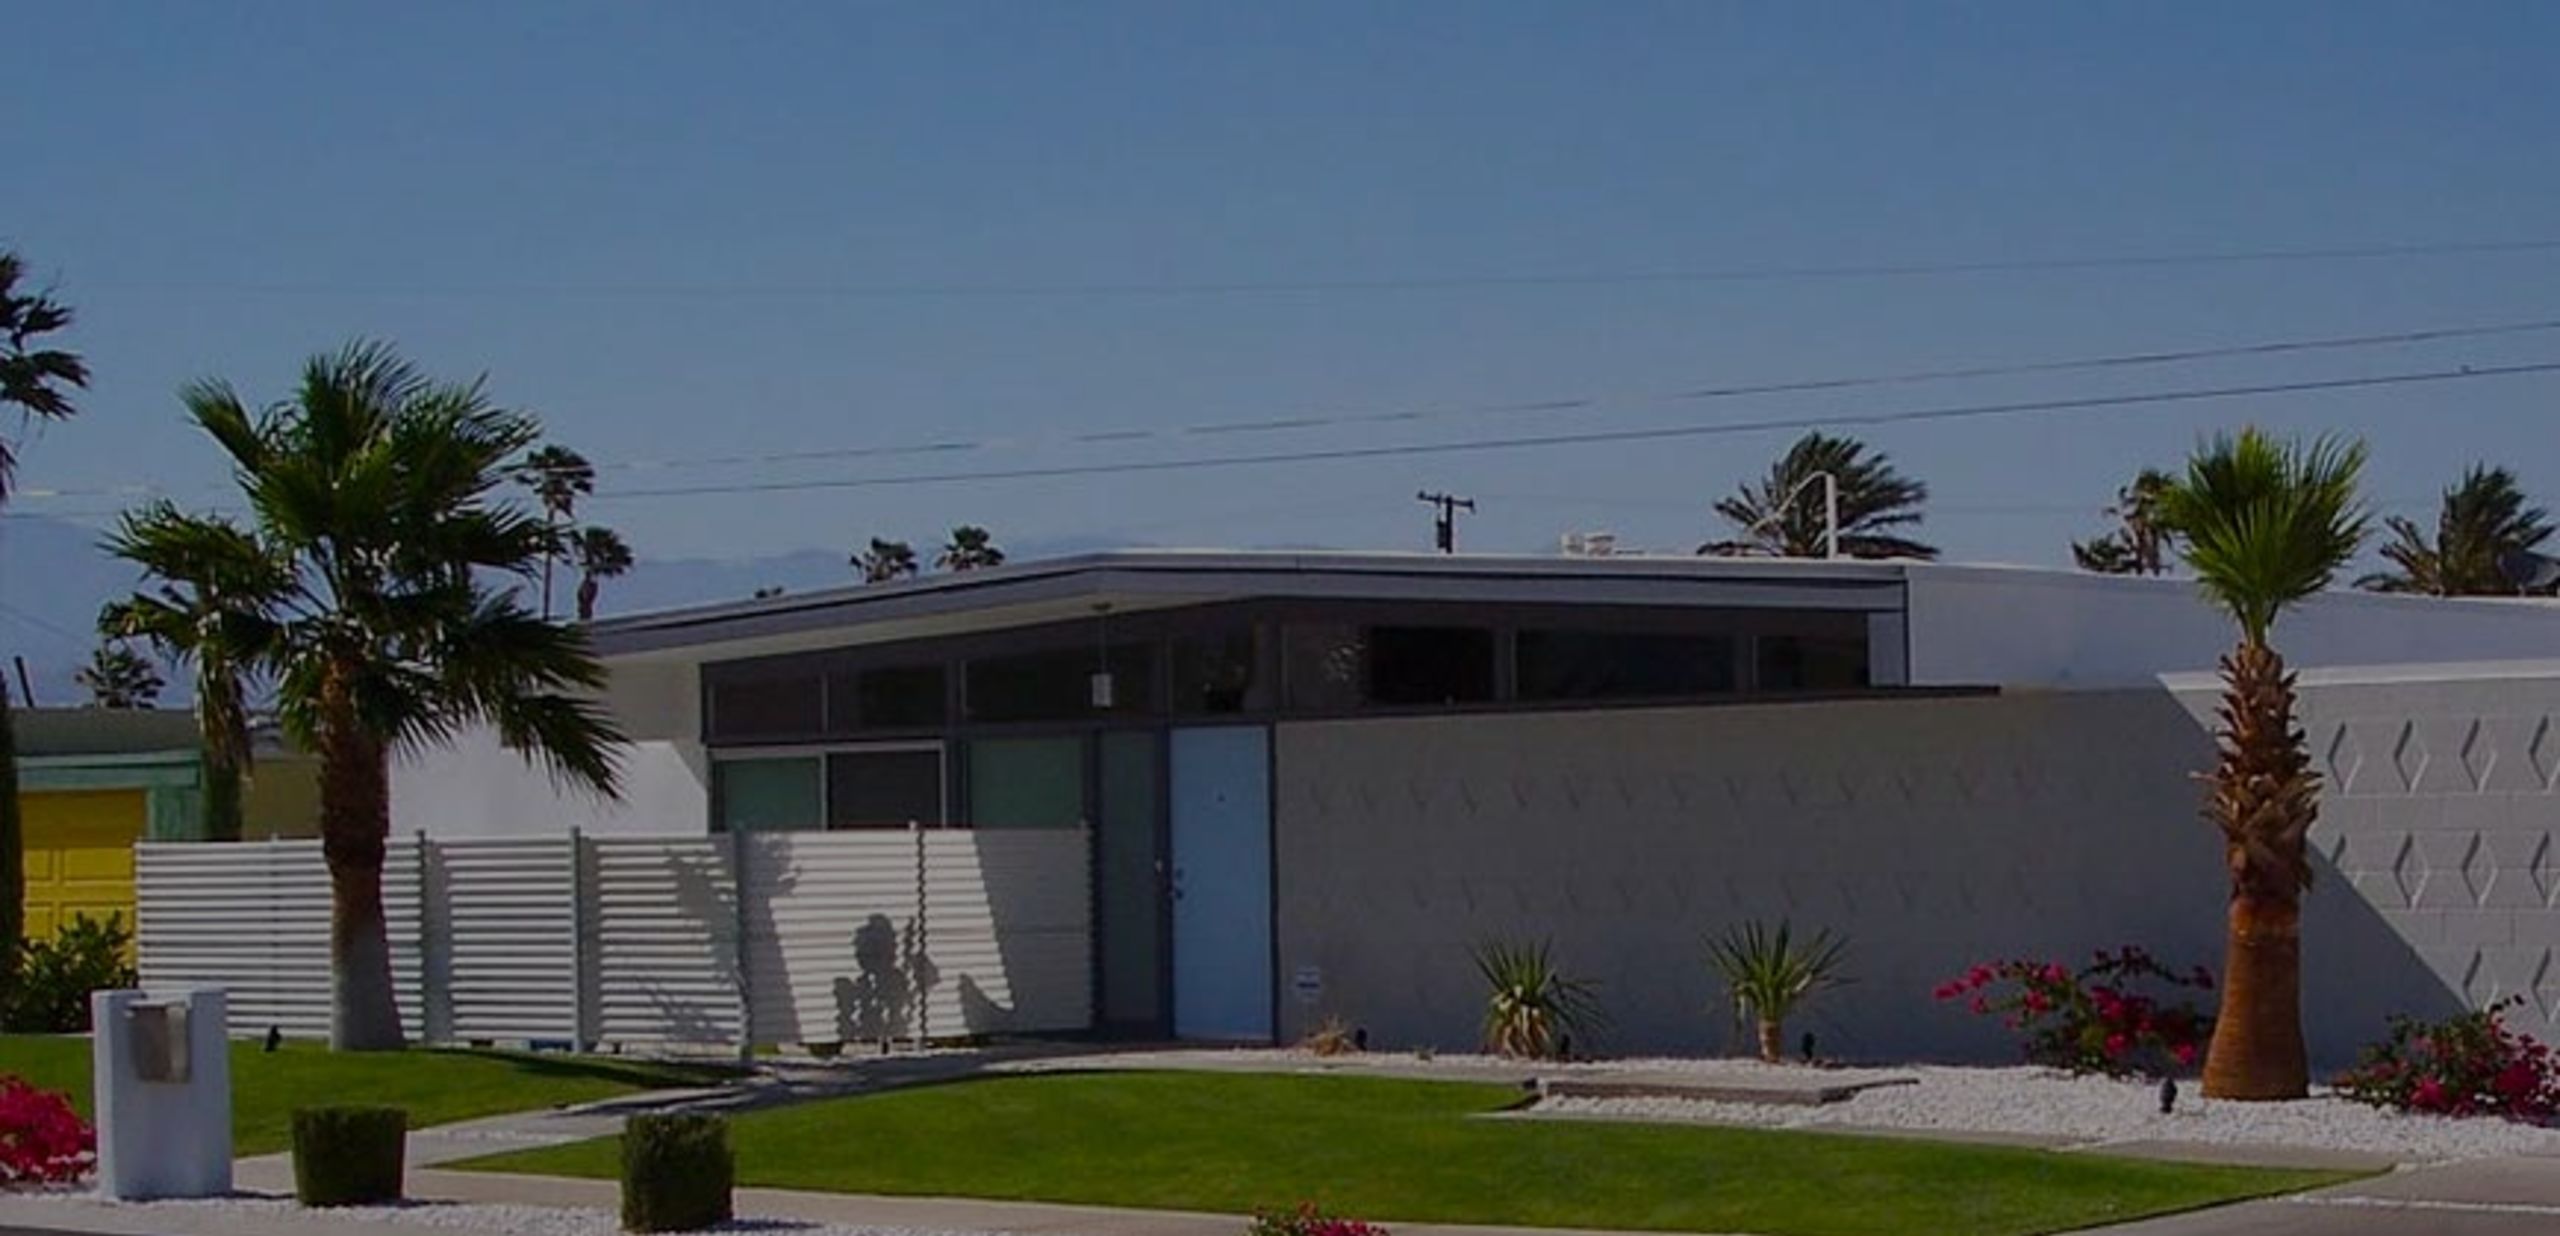 El Rancho Vista Estates &#8211; Neighborhood Profile